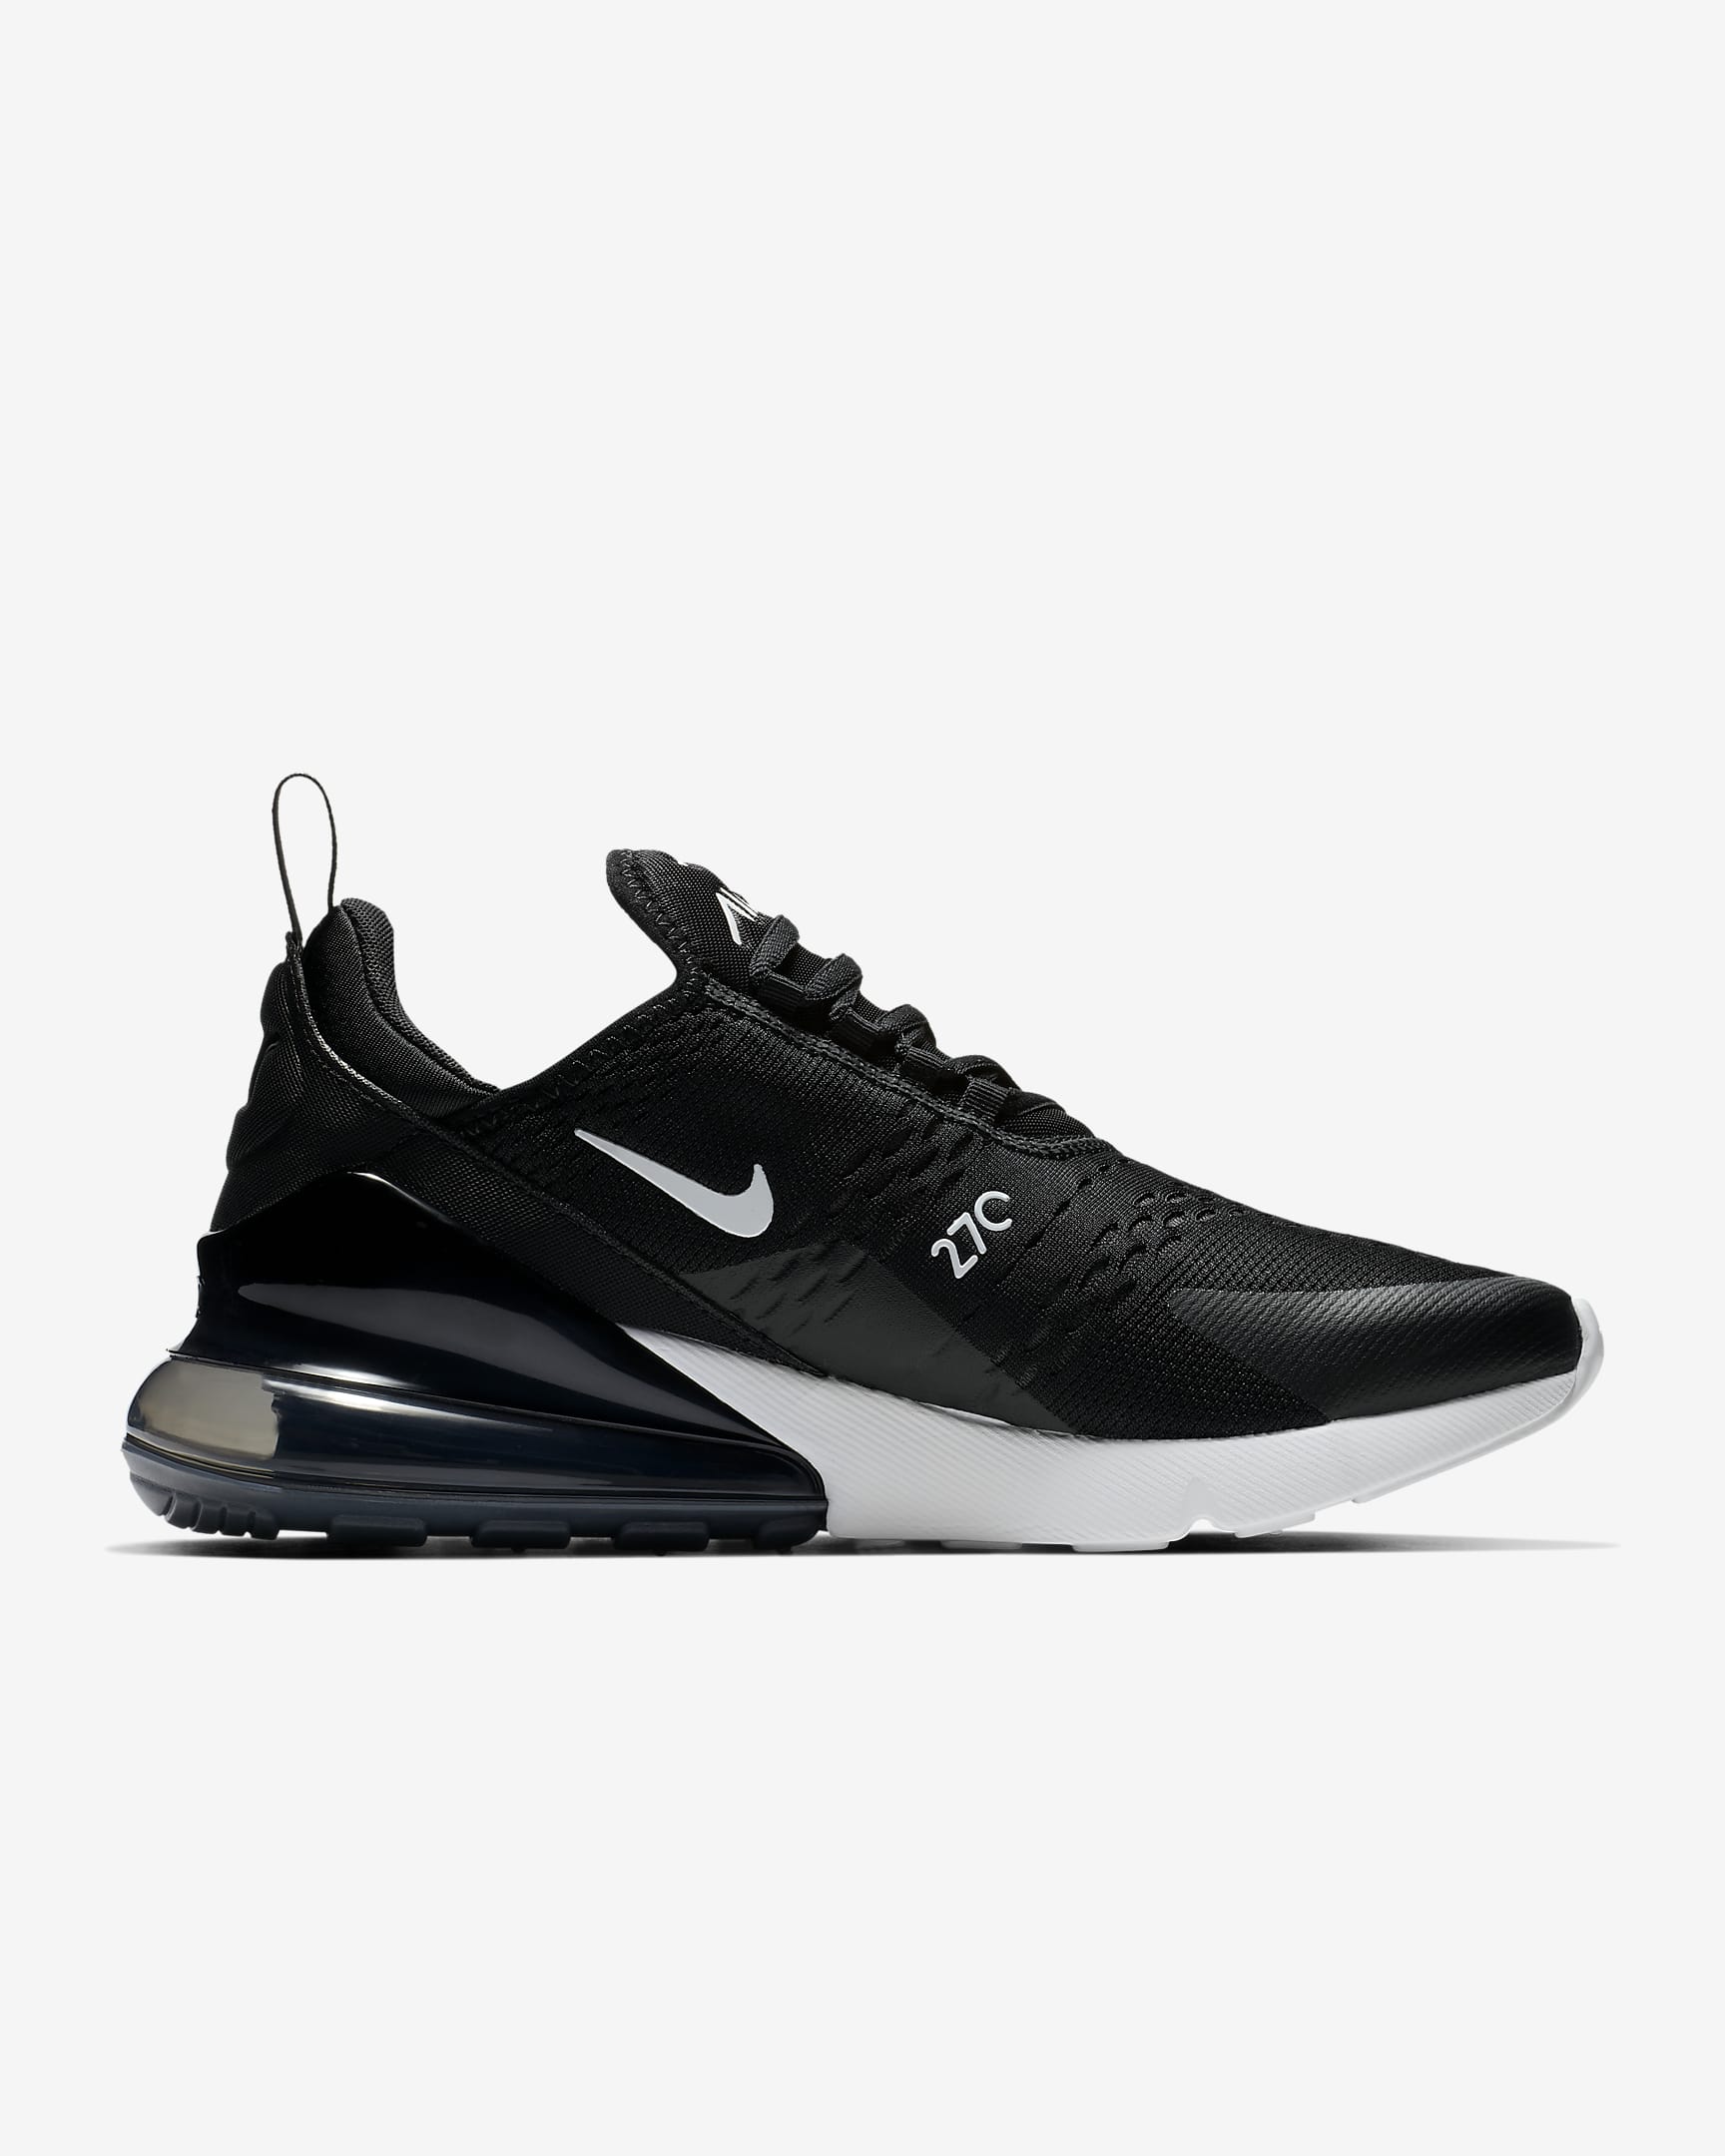 Nike Air Max 270-sko til kvinder - sort/hvid/Anthracite